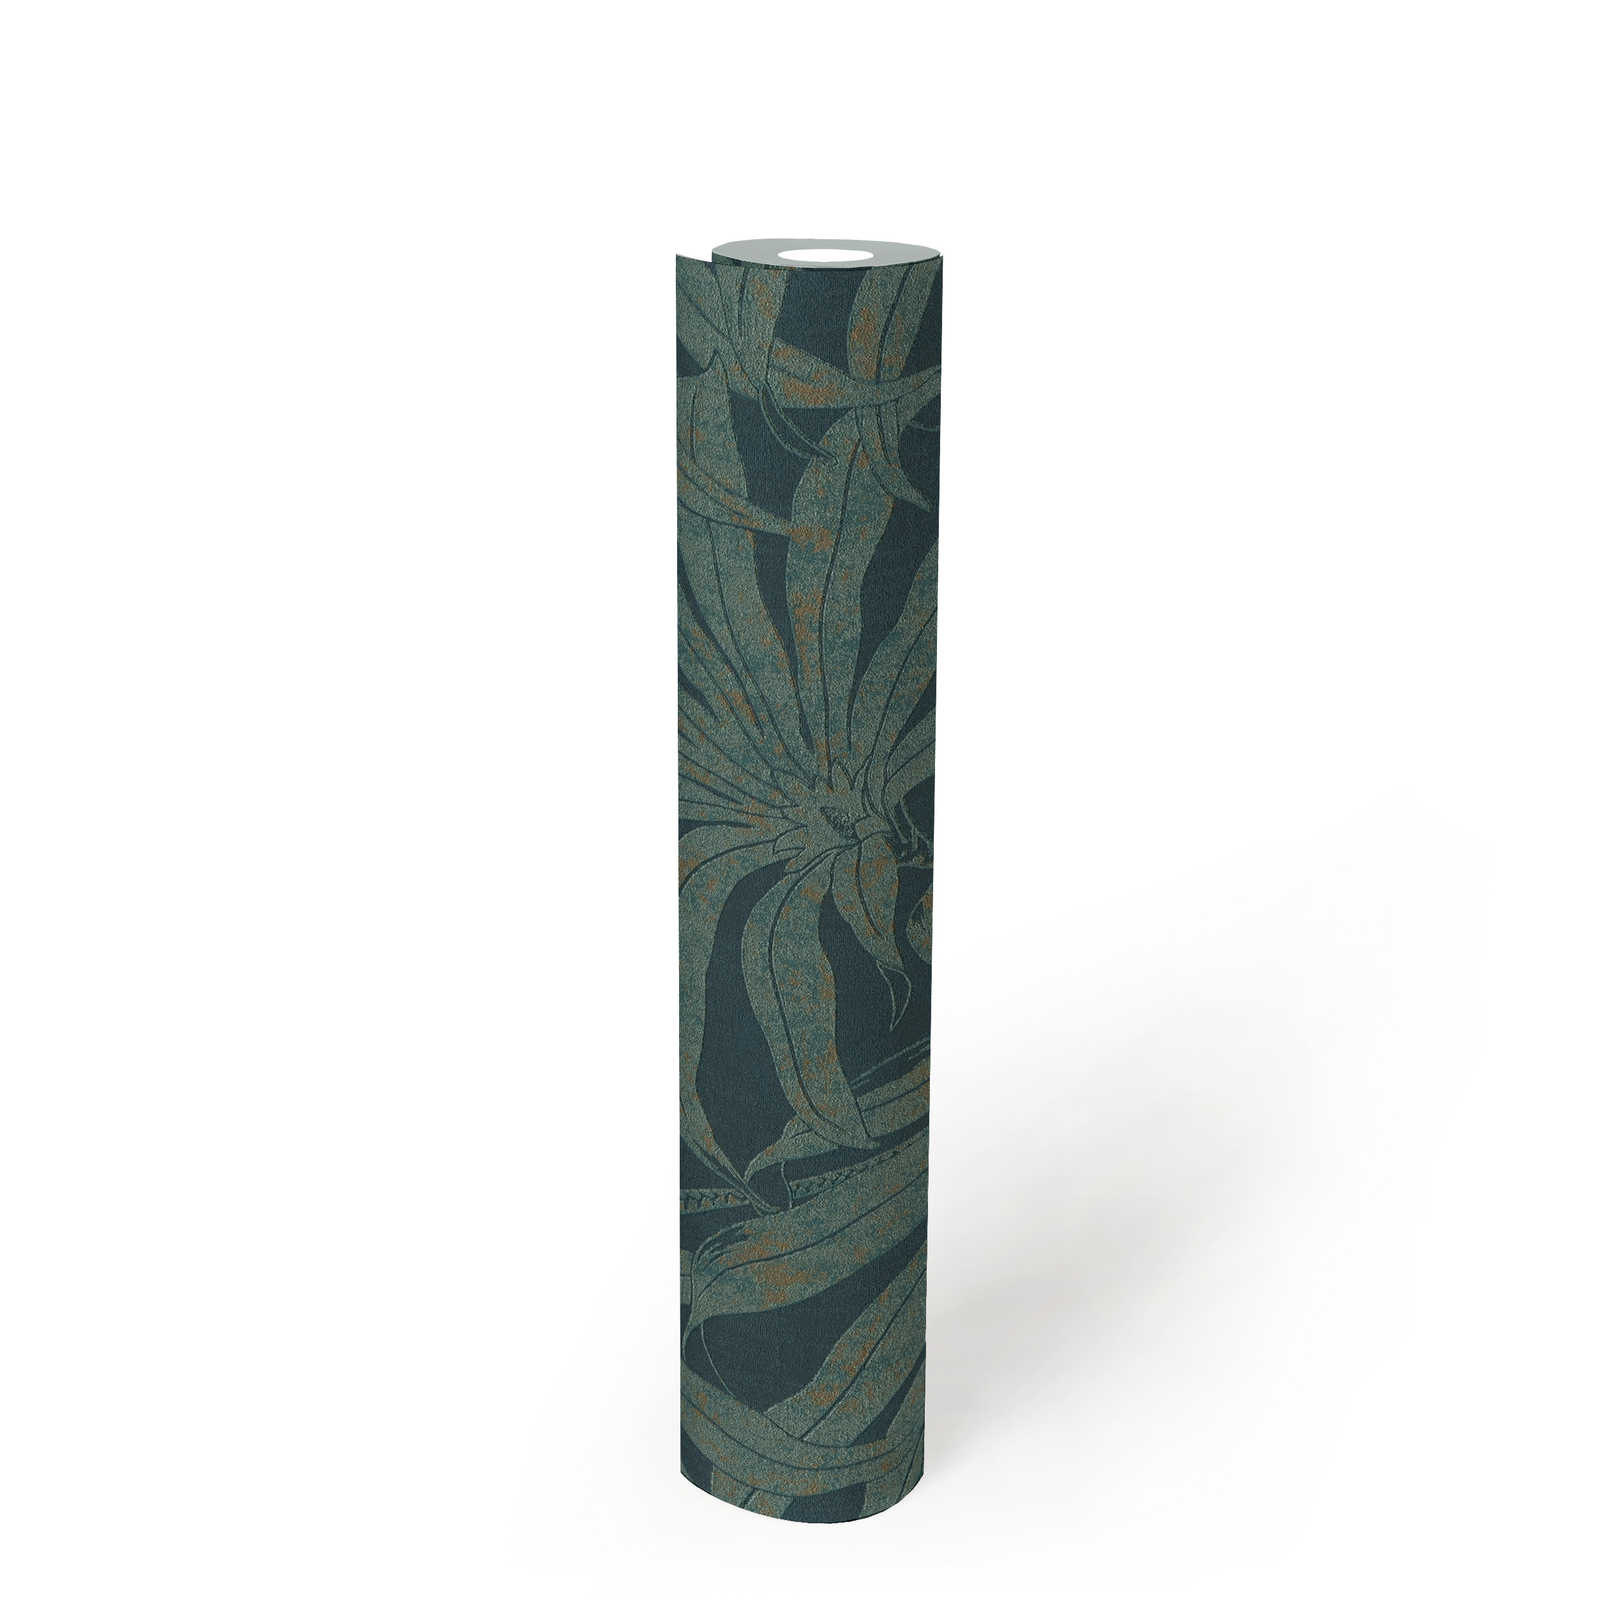             papier peint en papier à motifs floraux avec feuilles de jungle botaniques - pétrole, or, bleu
        